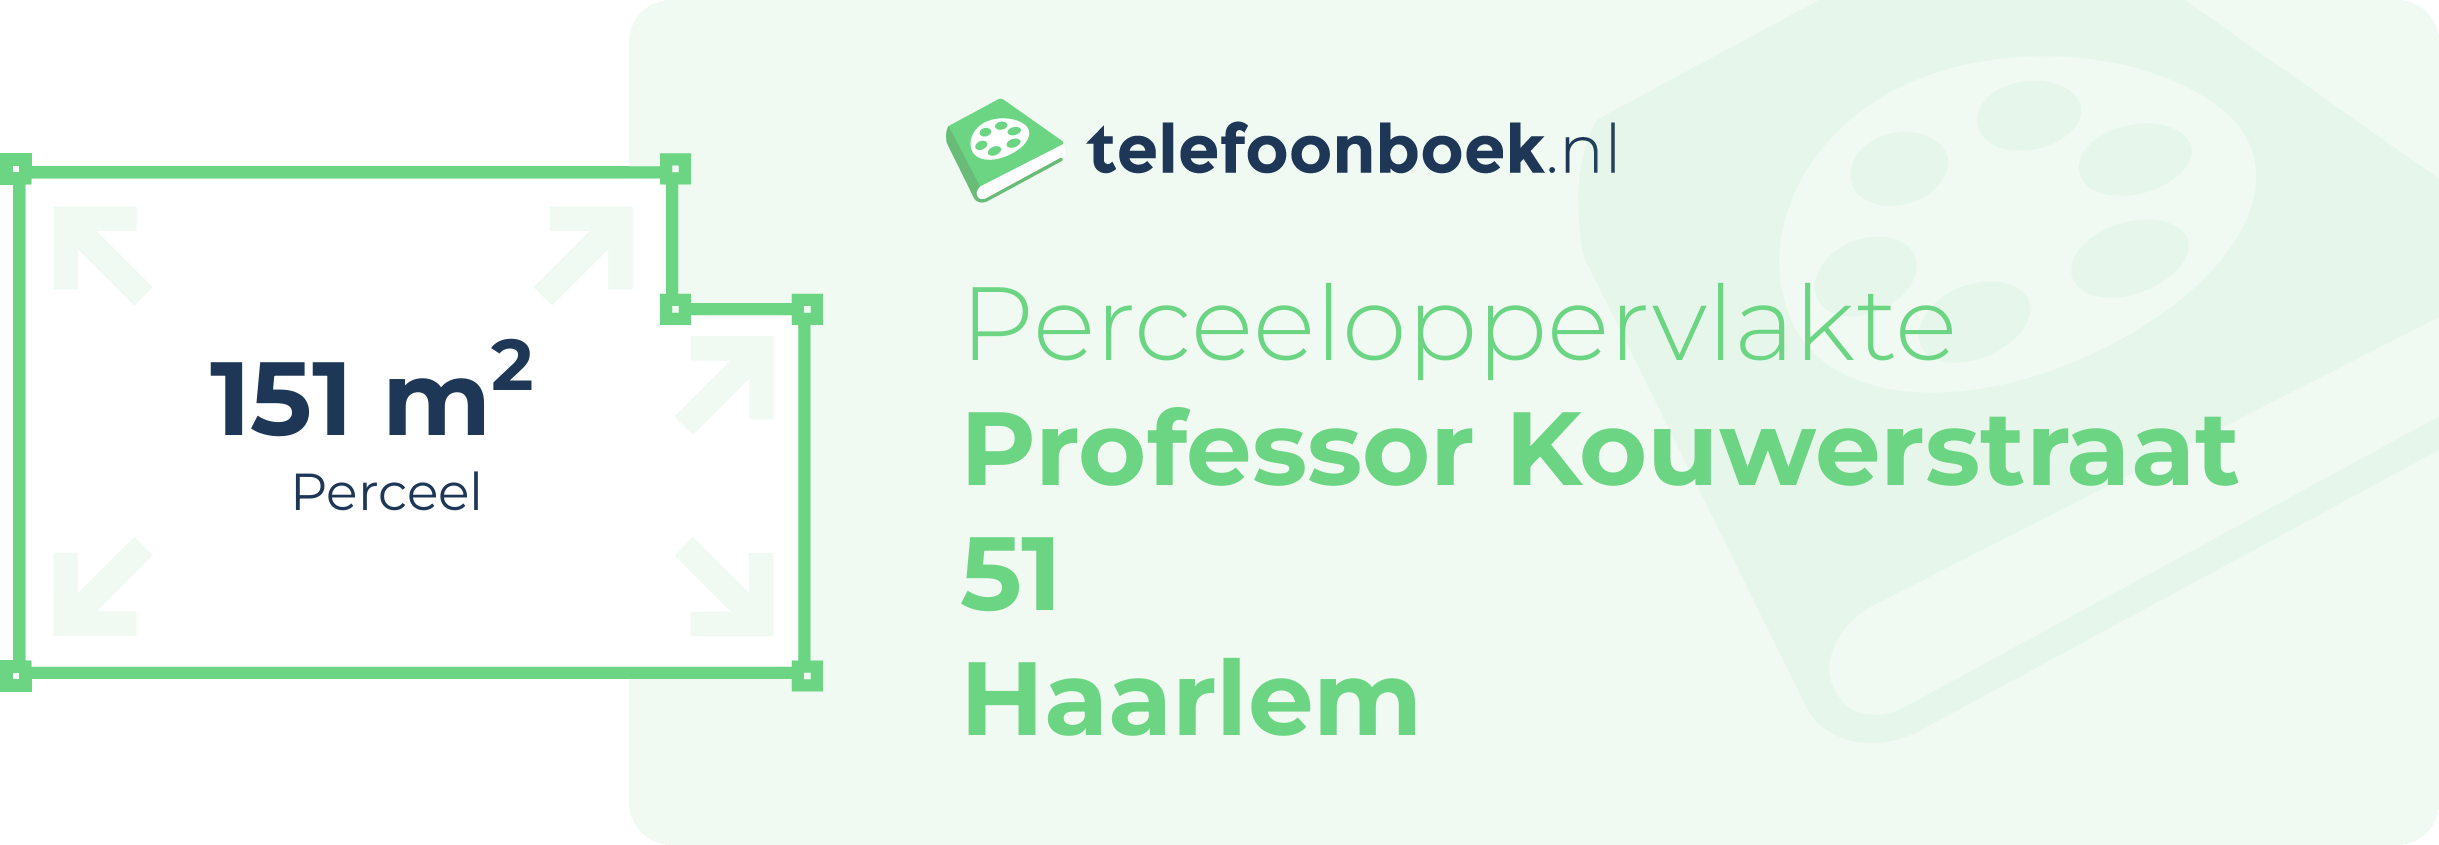 Perceeloppervlakte Professor Kouwerstraat 51 Haarlem